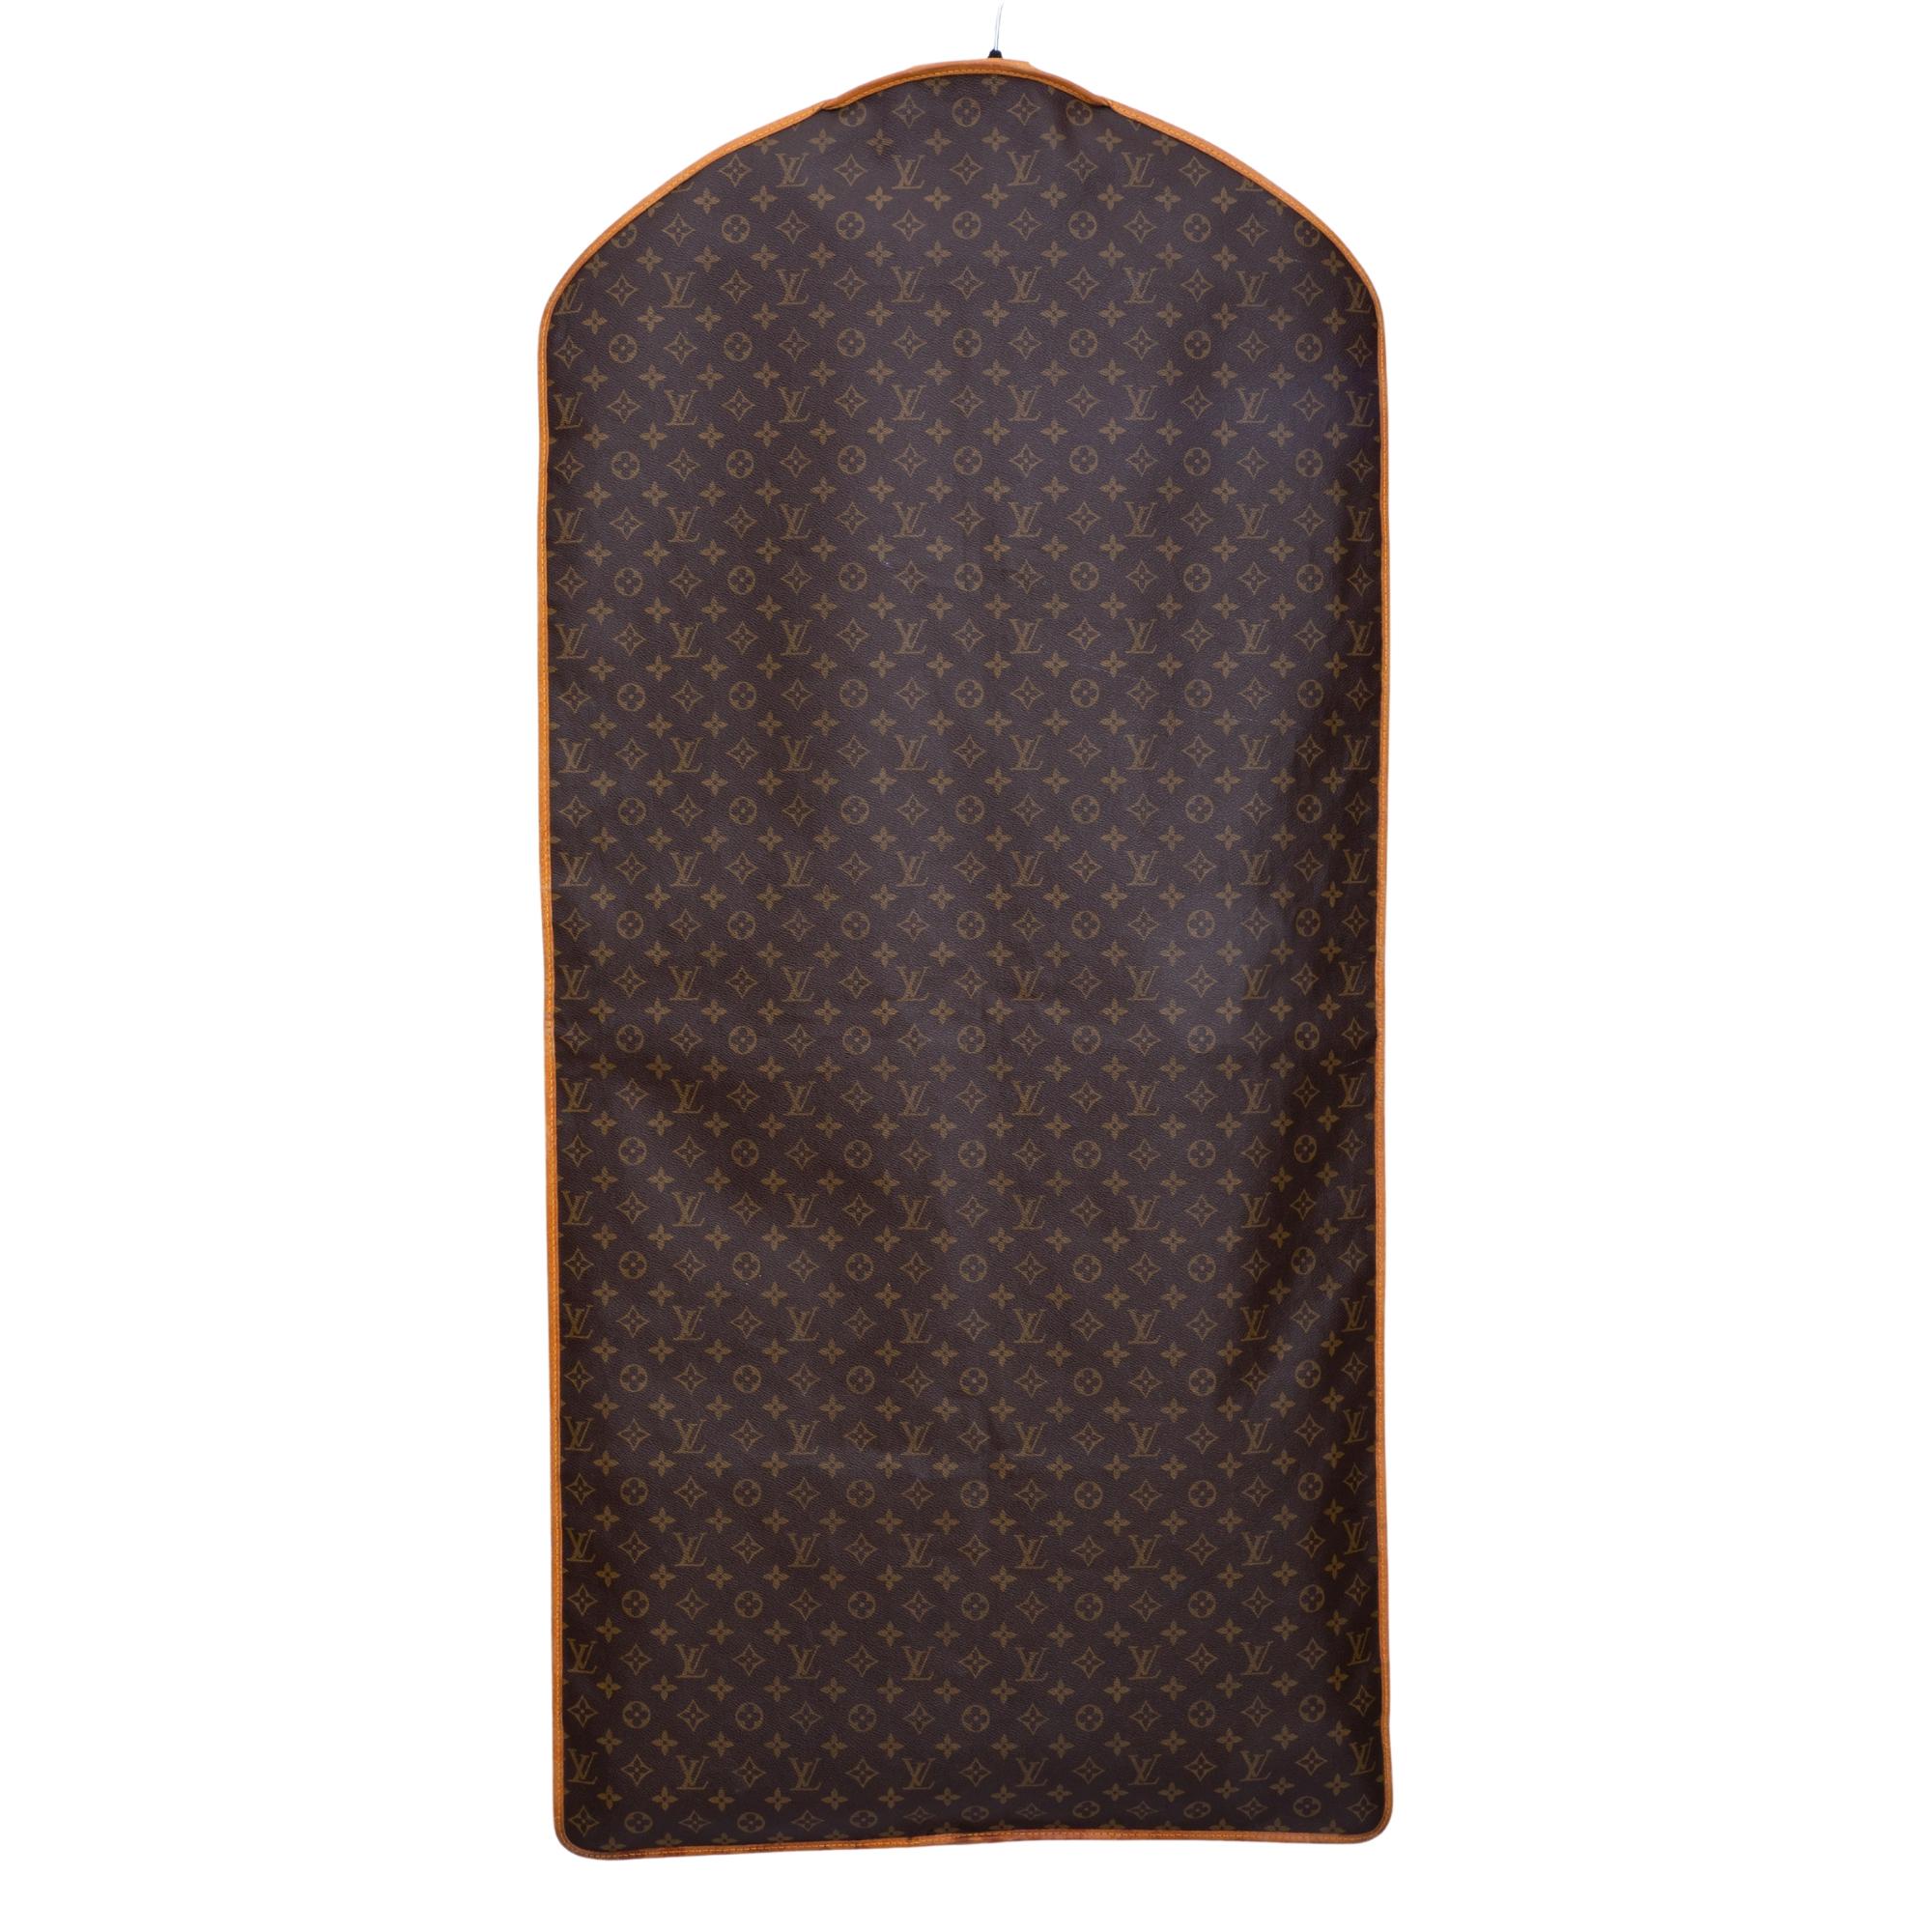 Dieser Kleidersack ist aus Louis Vuitton Monogram auf Toilettentuch gefertigt. Der Kleidersack hat einen Lederbesatz an der Peripherie, einen langen Reißverschluss in der Mitte und ist innen mit einem feinen braunen Stoff ausgestattet.

FARBE: